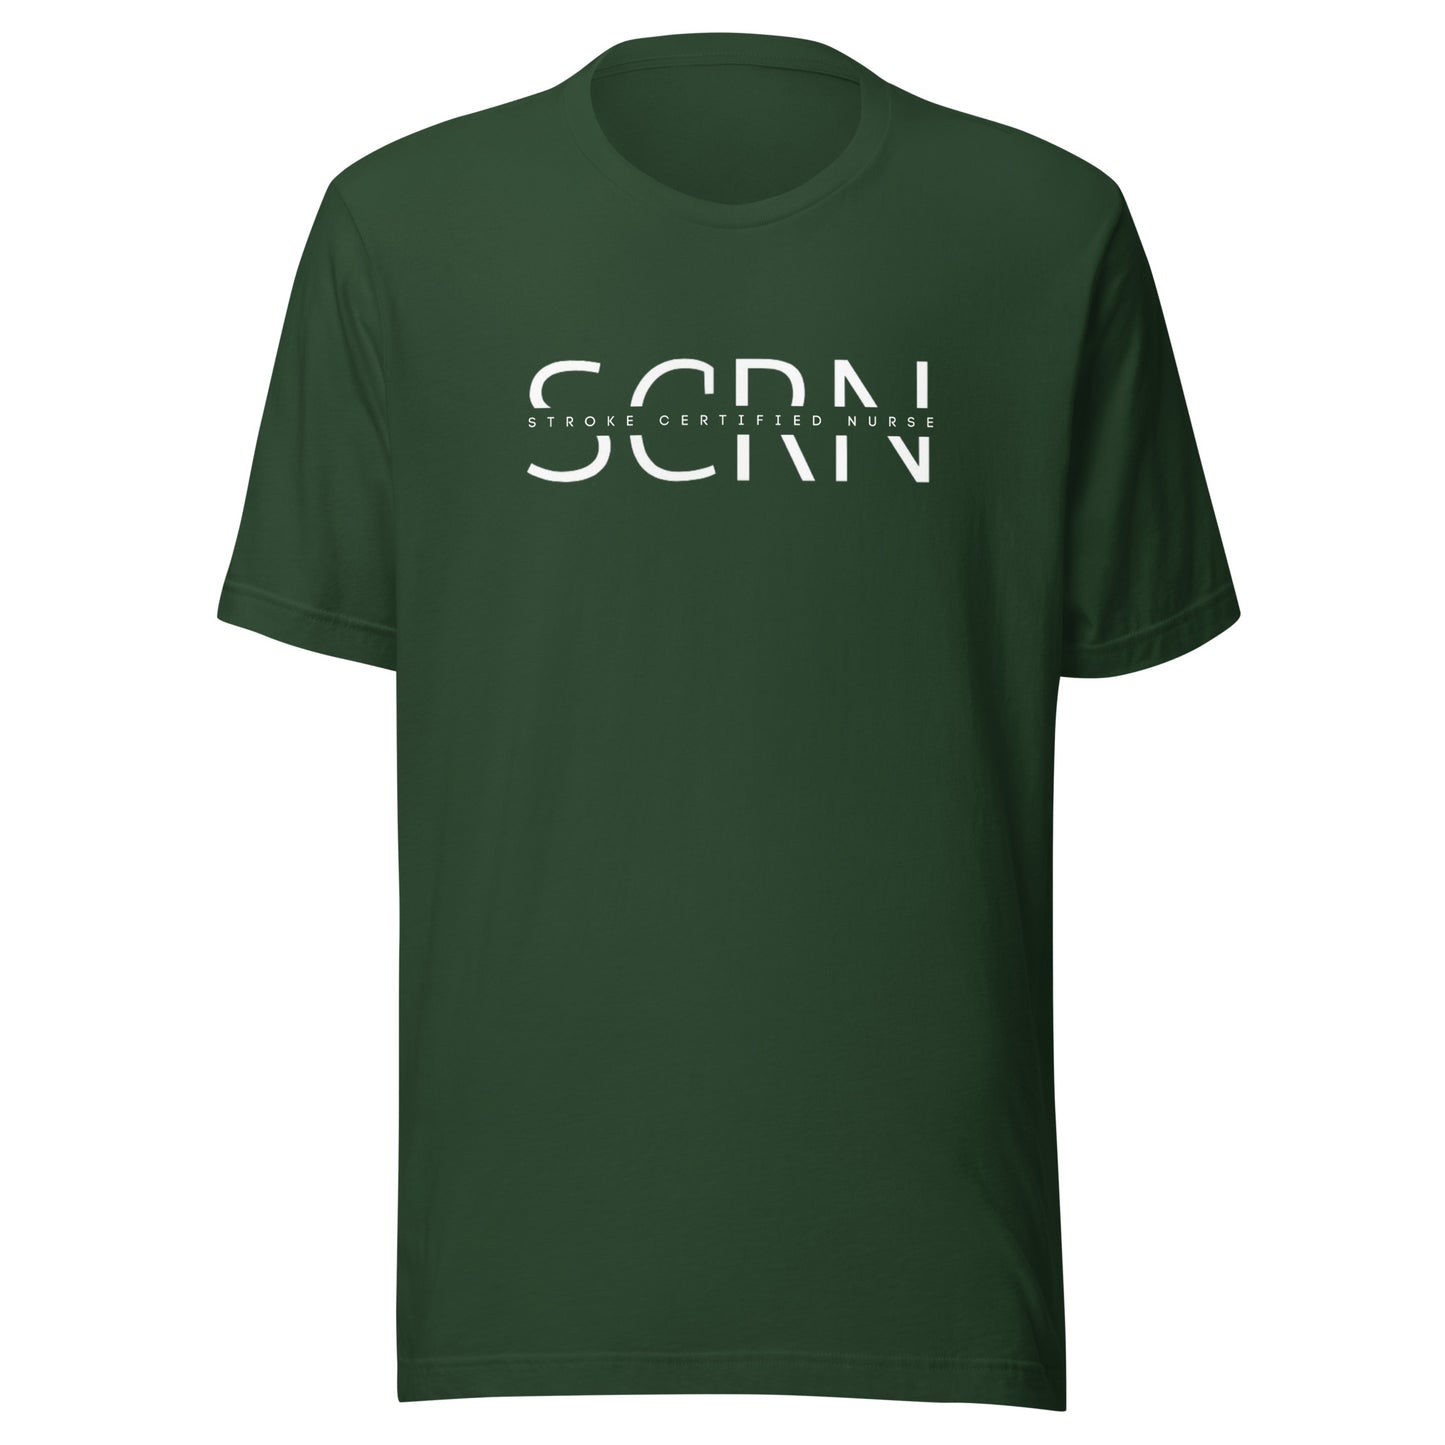 SCRN Stroke Certified Nurse t-shirt